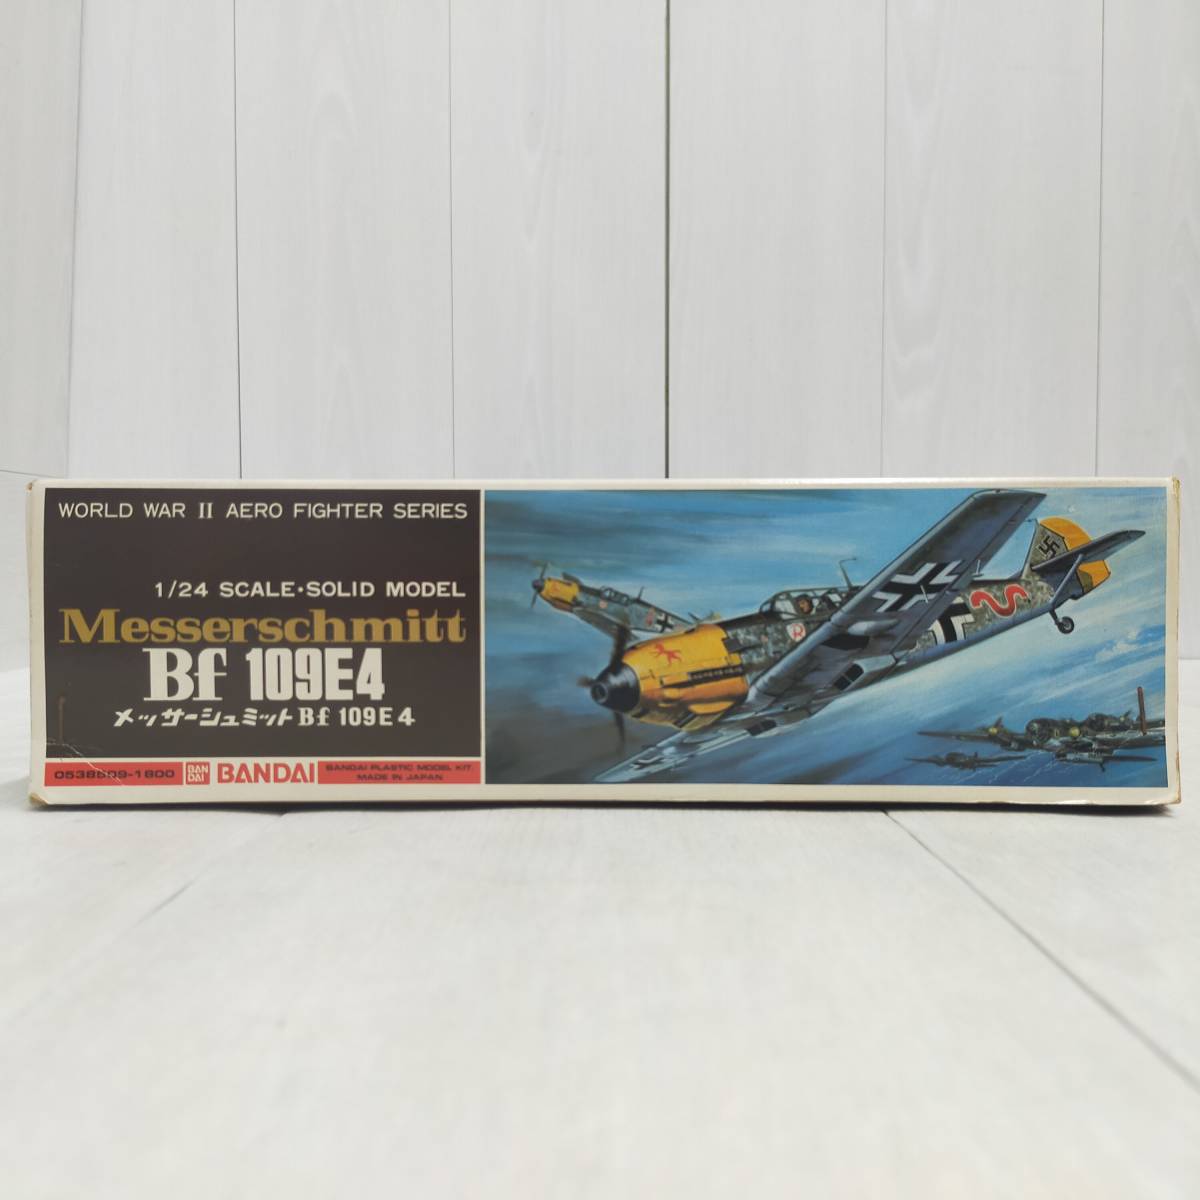 【 送料無料 】 未組立 ◆ BANDAI メッサーシュミット Bf 109E4 1/24 スケール 0538509 バンダイ ナチス ドイツ空軍 戦闘機 プラモ 模型_画像7